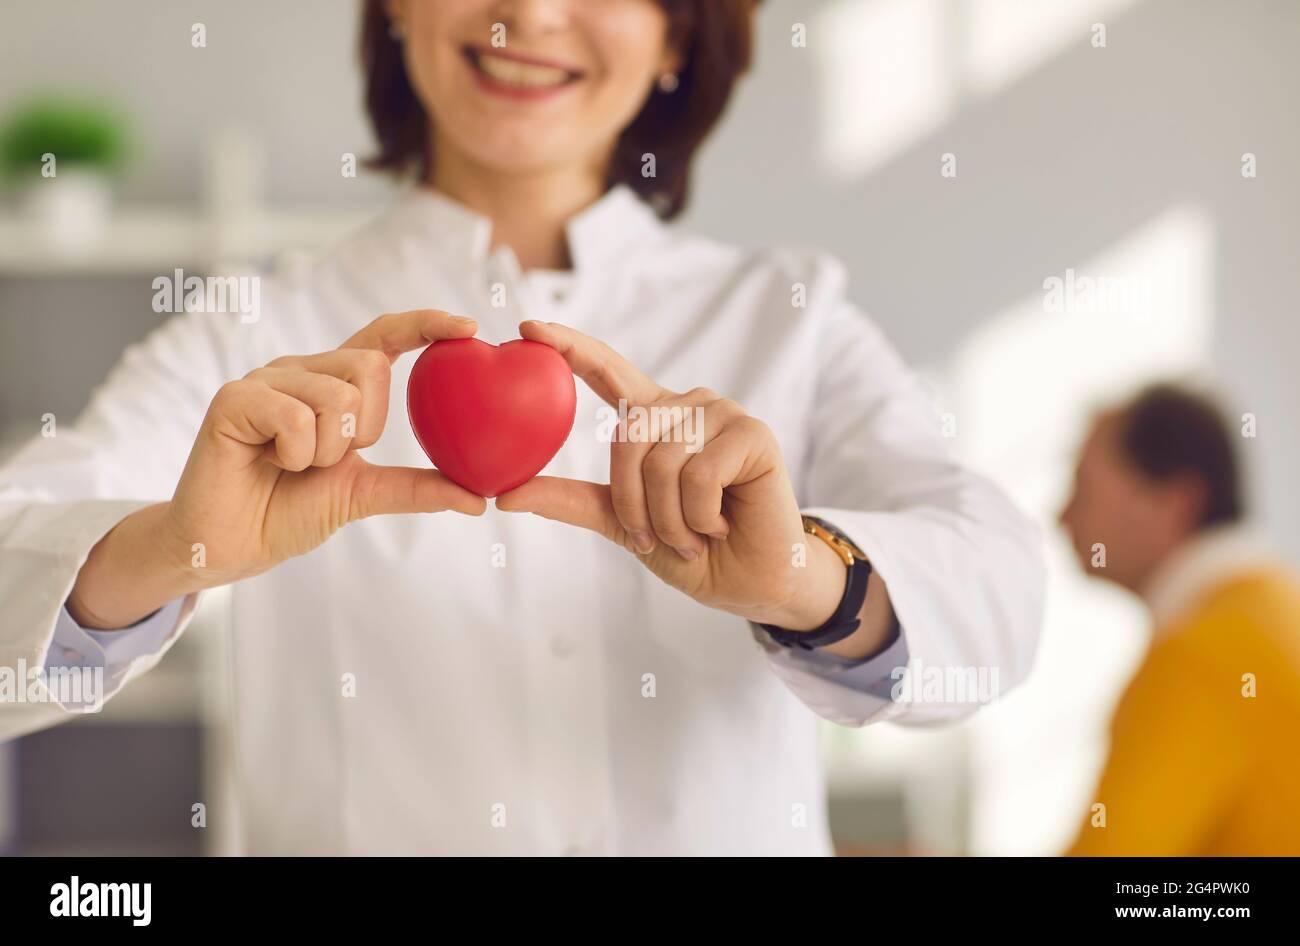 Nahaufnahme eines kleinen roten Herzens, das in den Händen einer lächelnden Kardiologin gehalten wird. Stockfoto